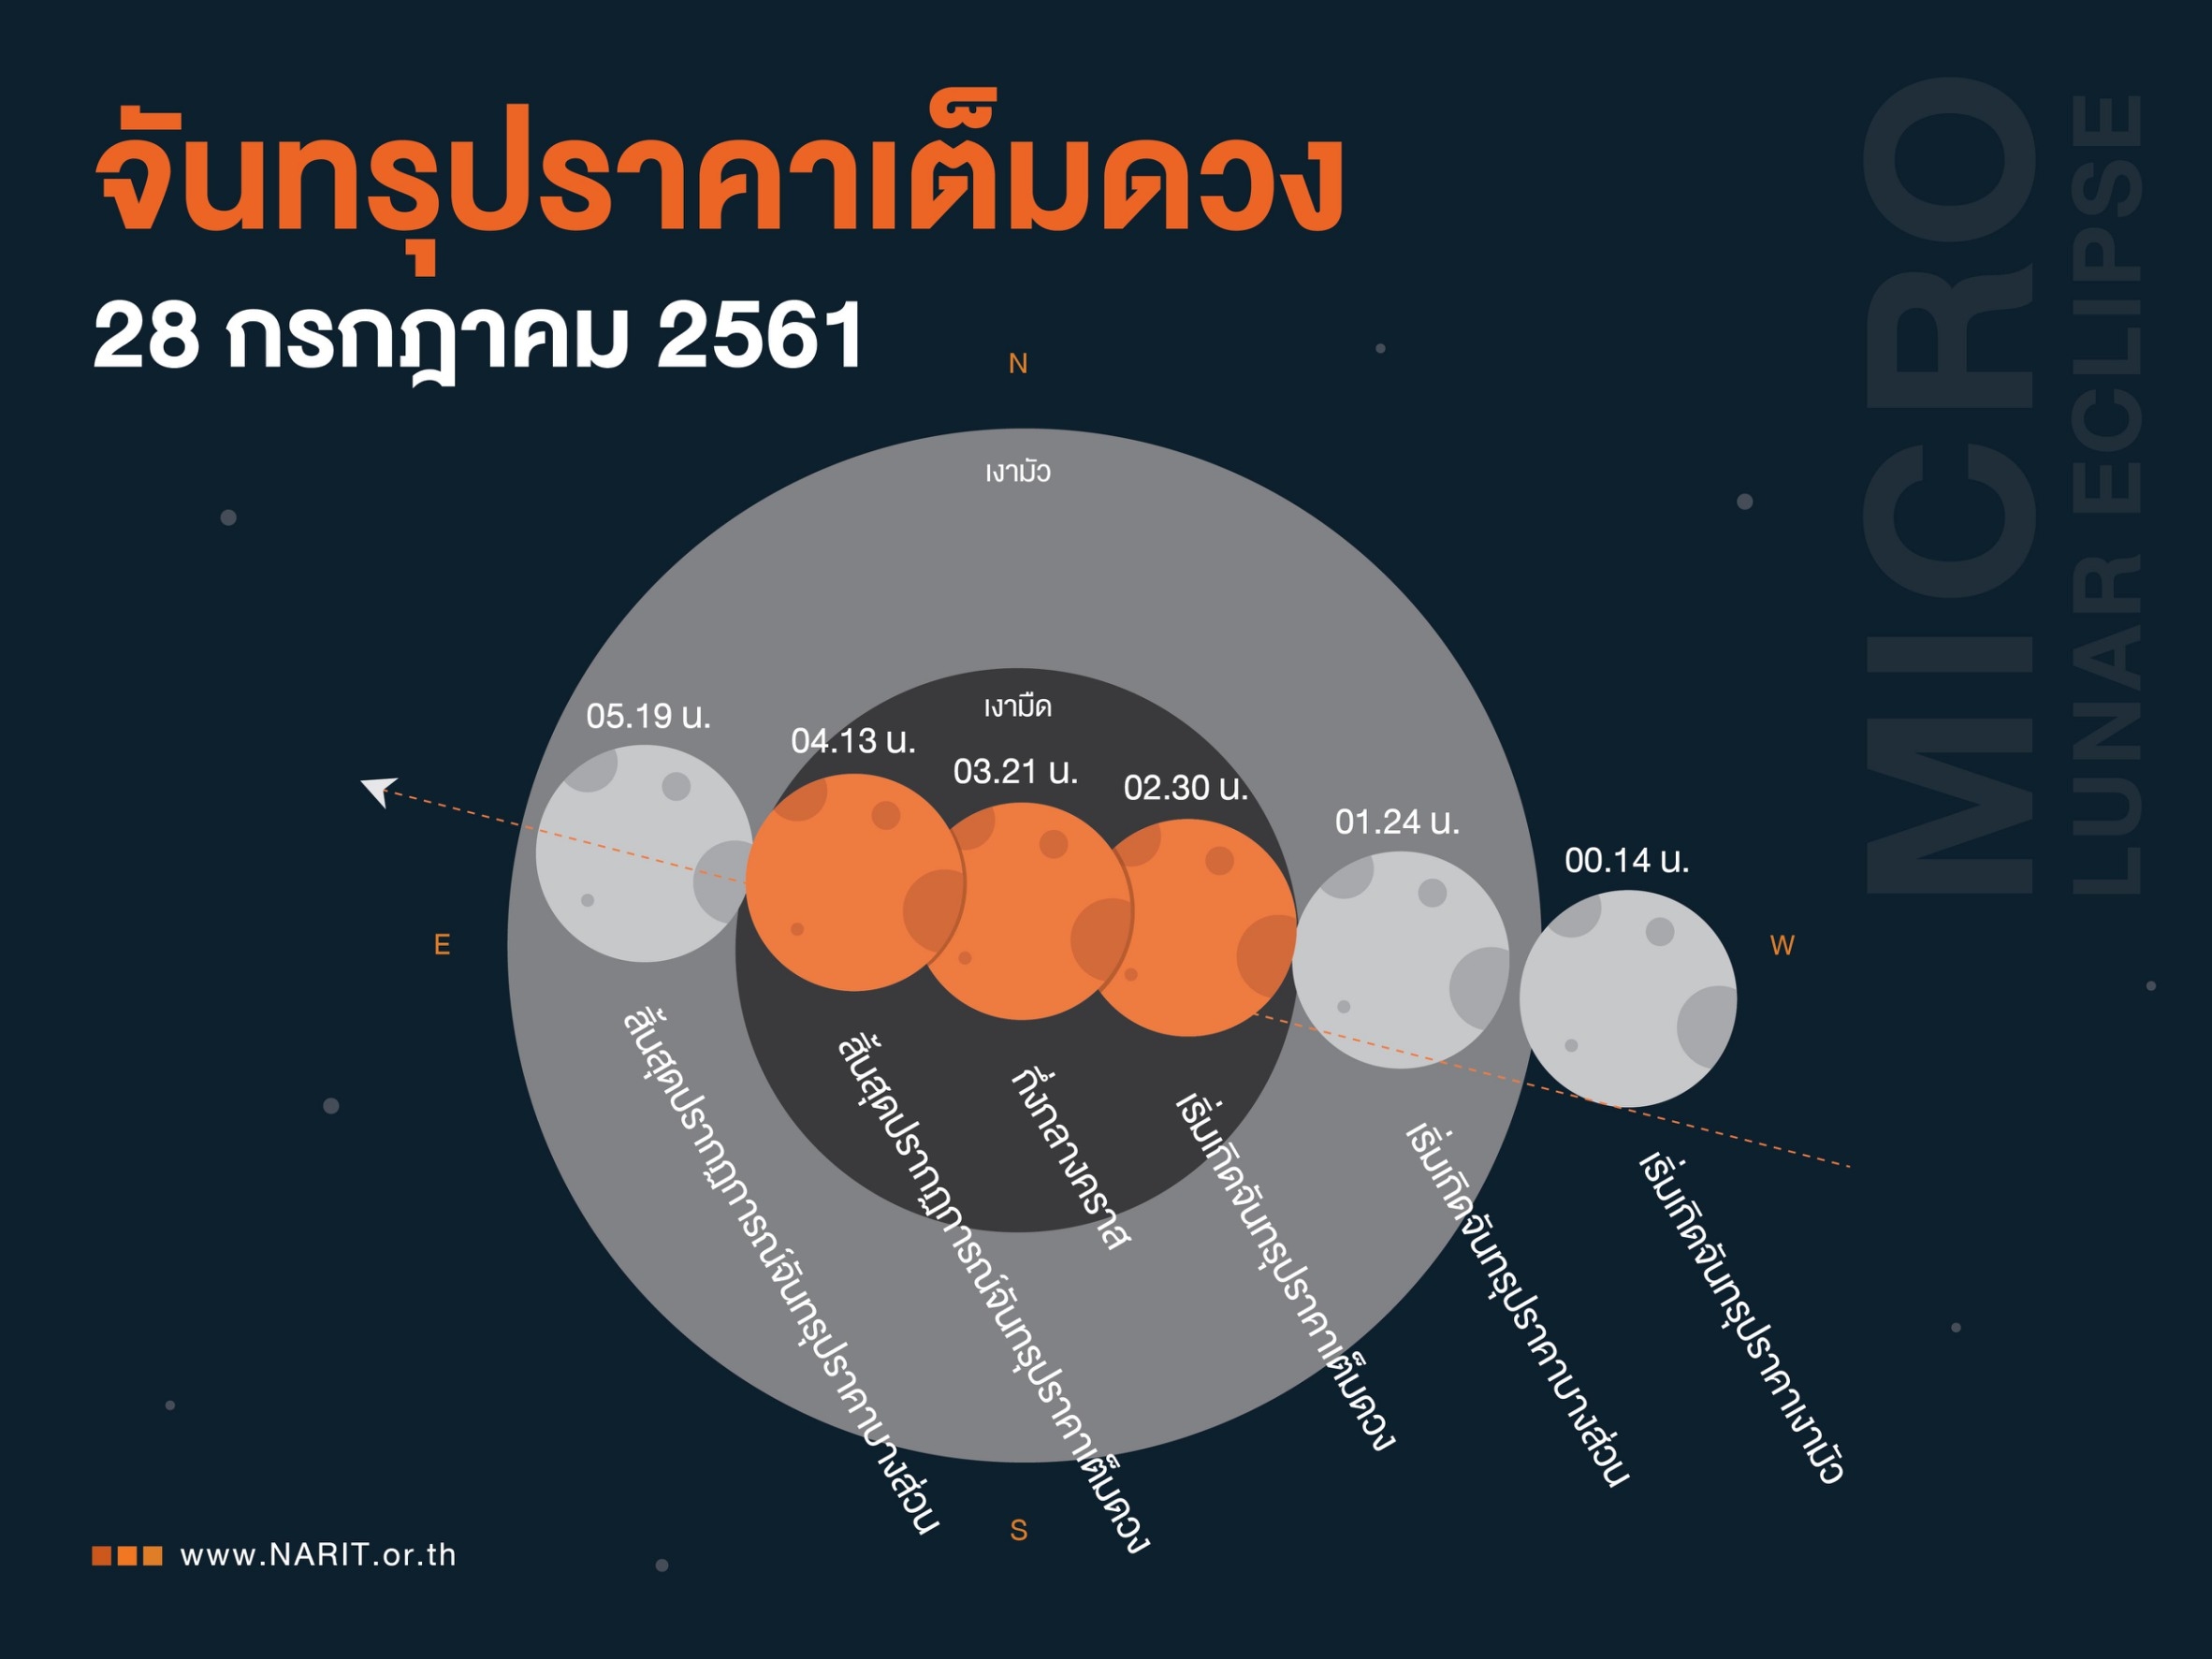 สดร. เก็บภาพ 3 ปรากฏการณ์ดาราศาสตร์สุดอลัง คืน 27 - รุ่งเช้า 28 ก.ค. 61 มาฝากชาวไทย